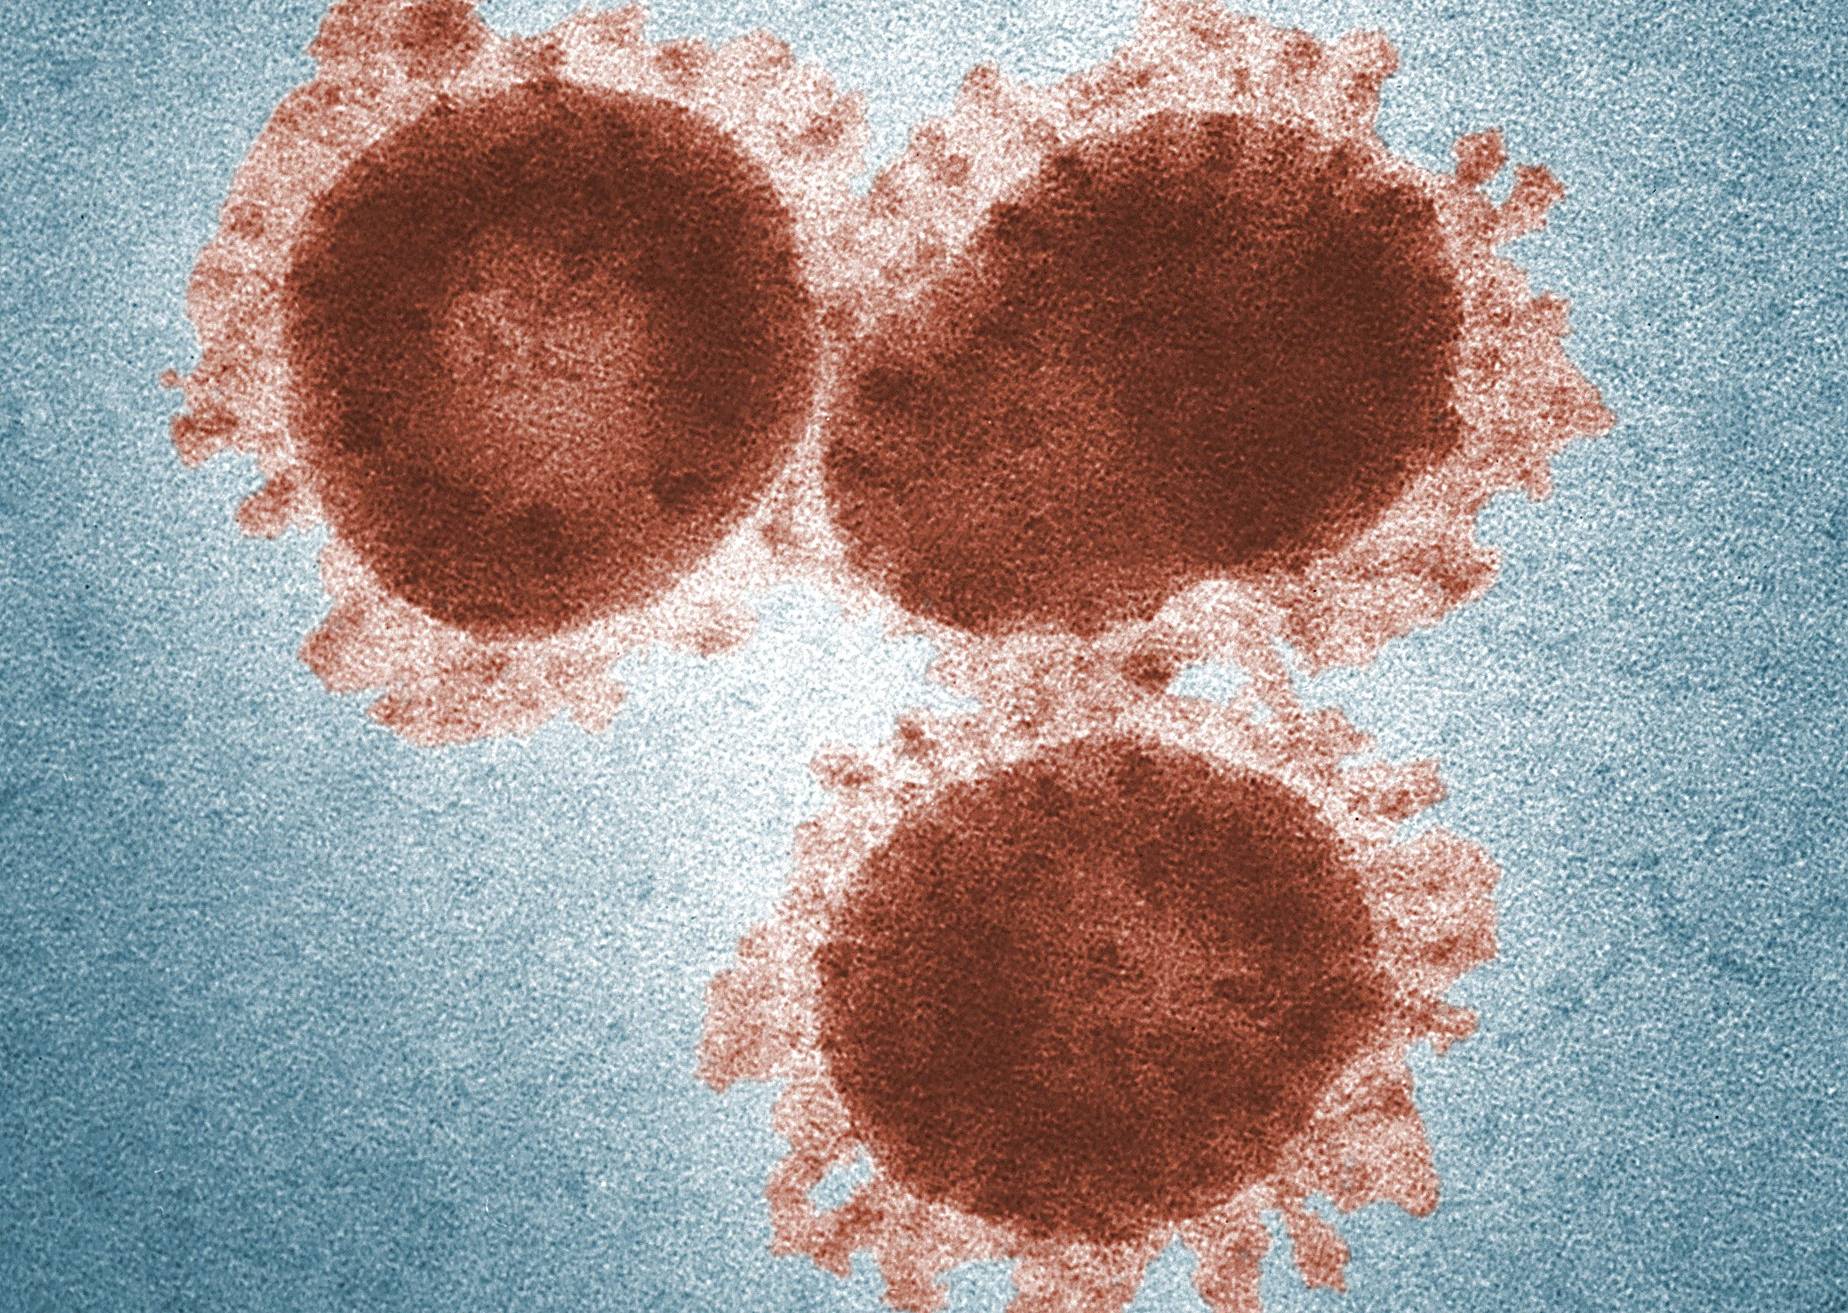  So sieht das so genannte Coronavirus 2019-nCoV aus, das derzeit für Aufregung sorgt. 